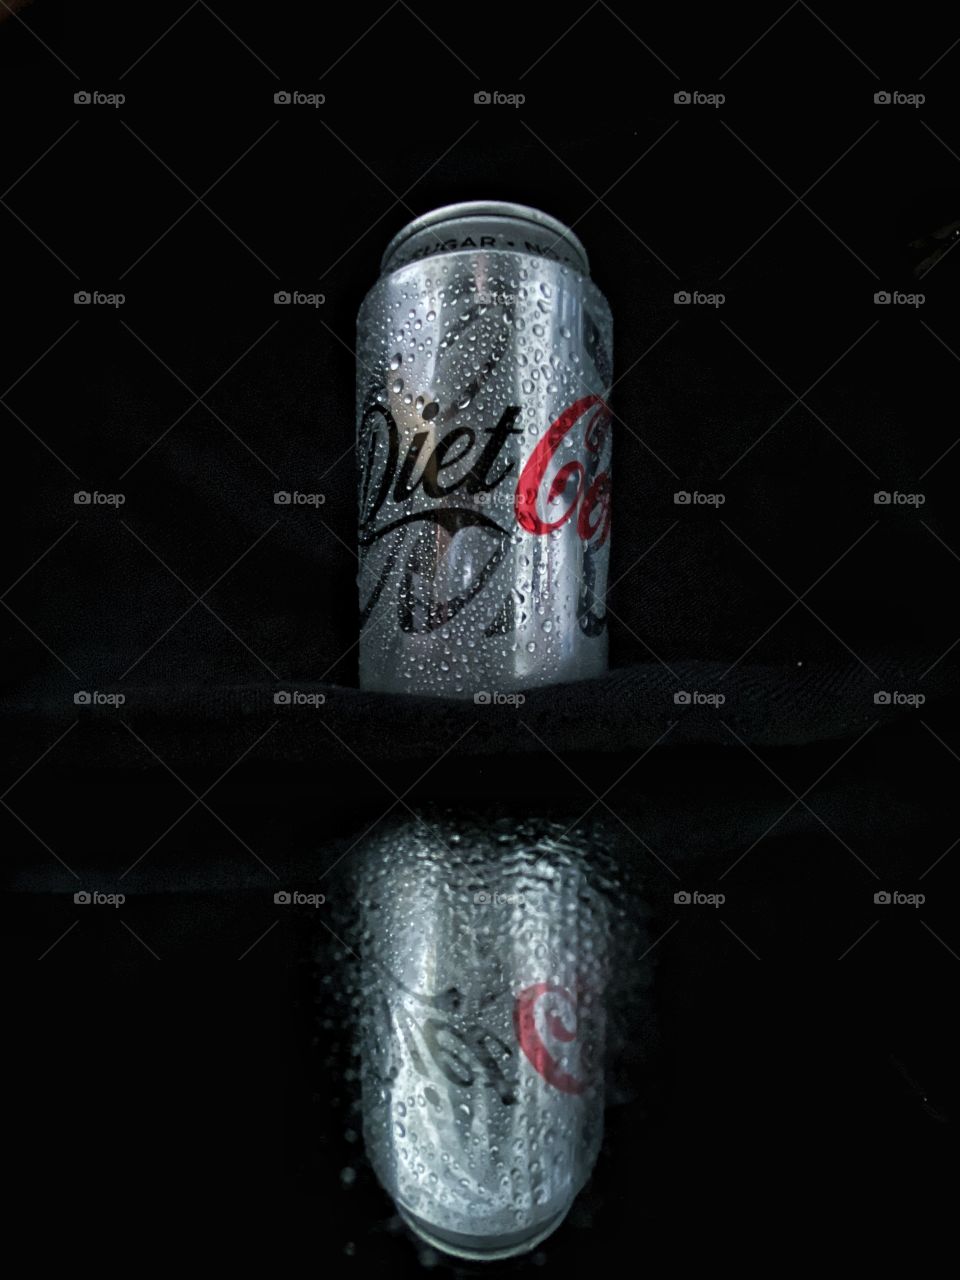 Diet Coke reflection, water drops